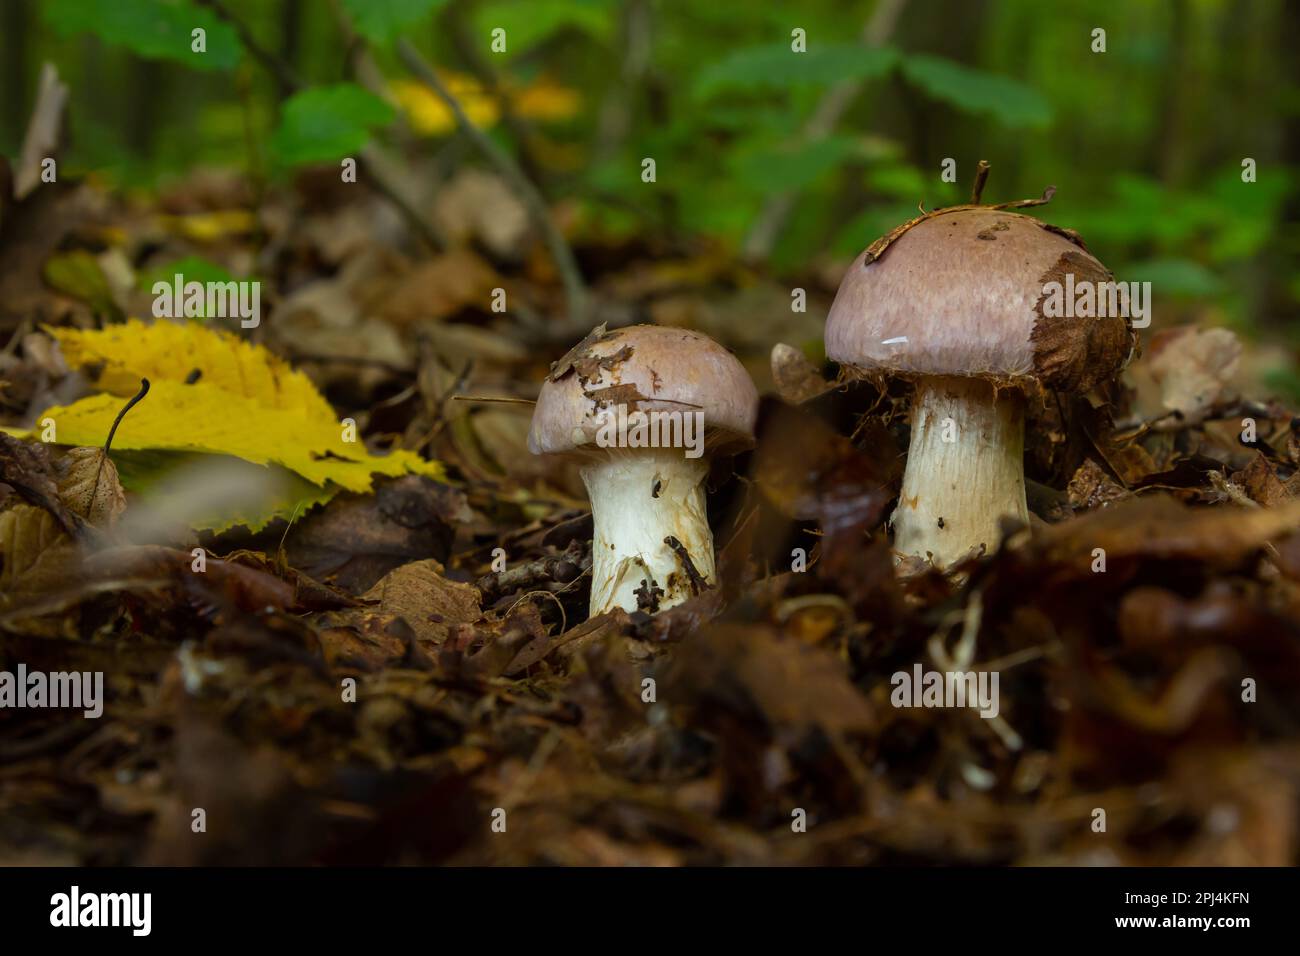 Kleine Gassy Webcap, Cortinarius traganus, giftige Pilze in Waldnahaufnahmen, selektiver Fokus, flacher Freiheitsgrad. Stockfoto